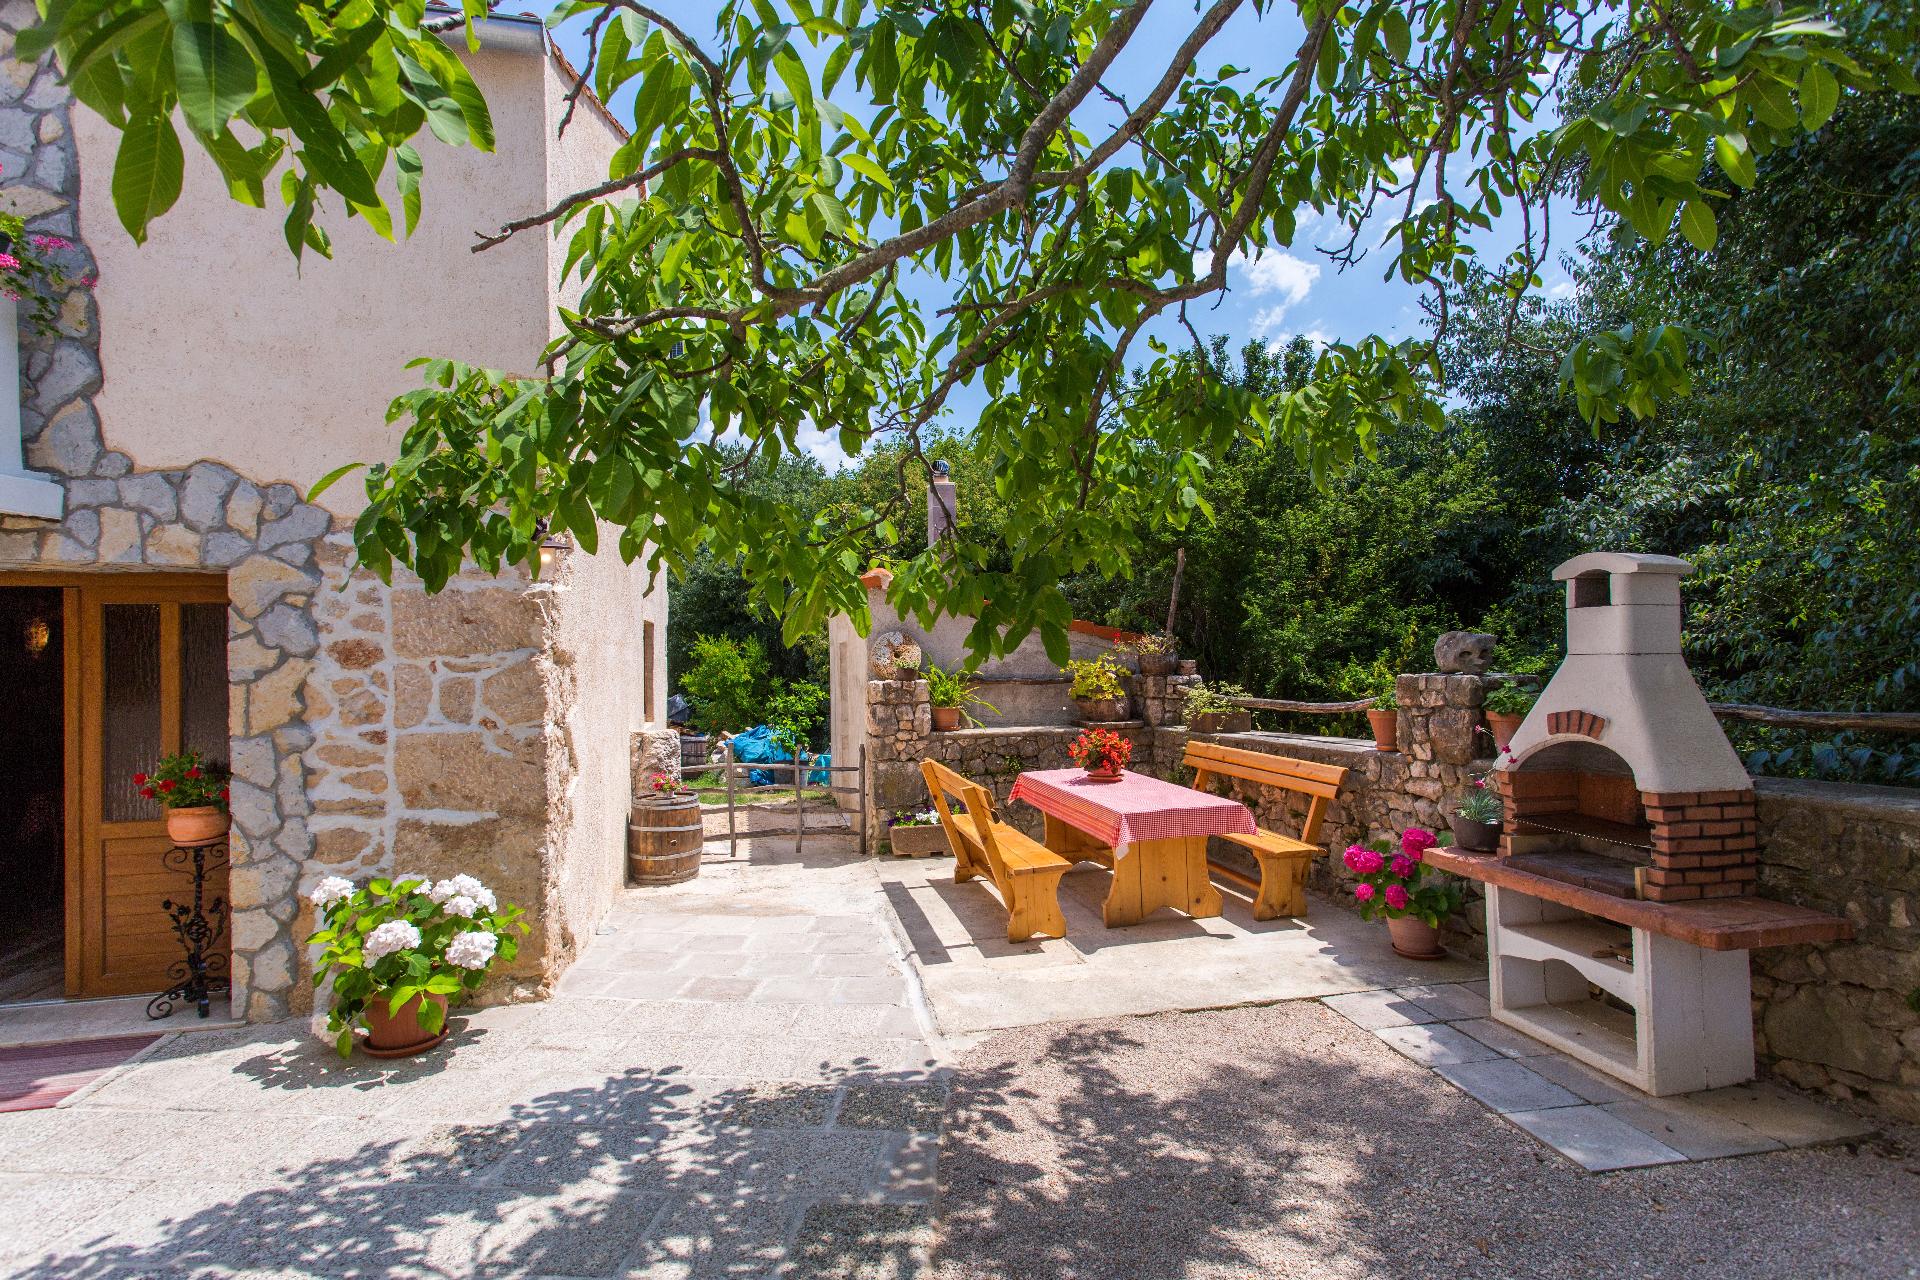 Ferienhaus für 4 Personen ca. 60 m² in P Ferienhaus in Kroatien